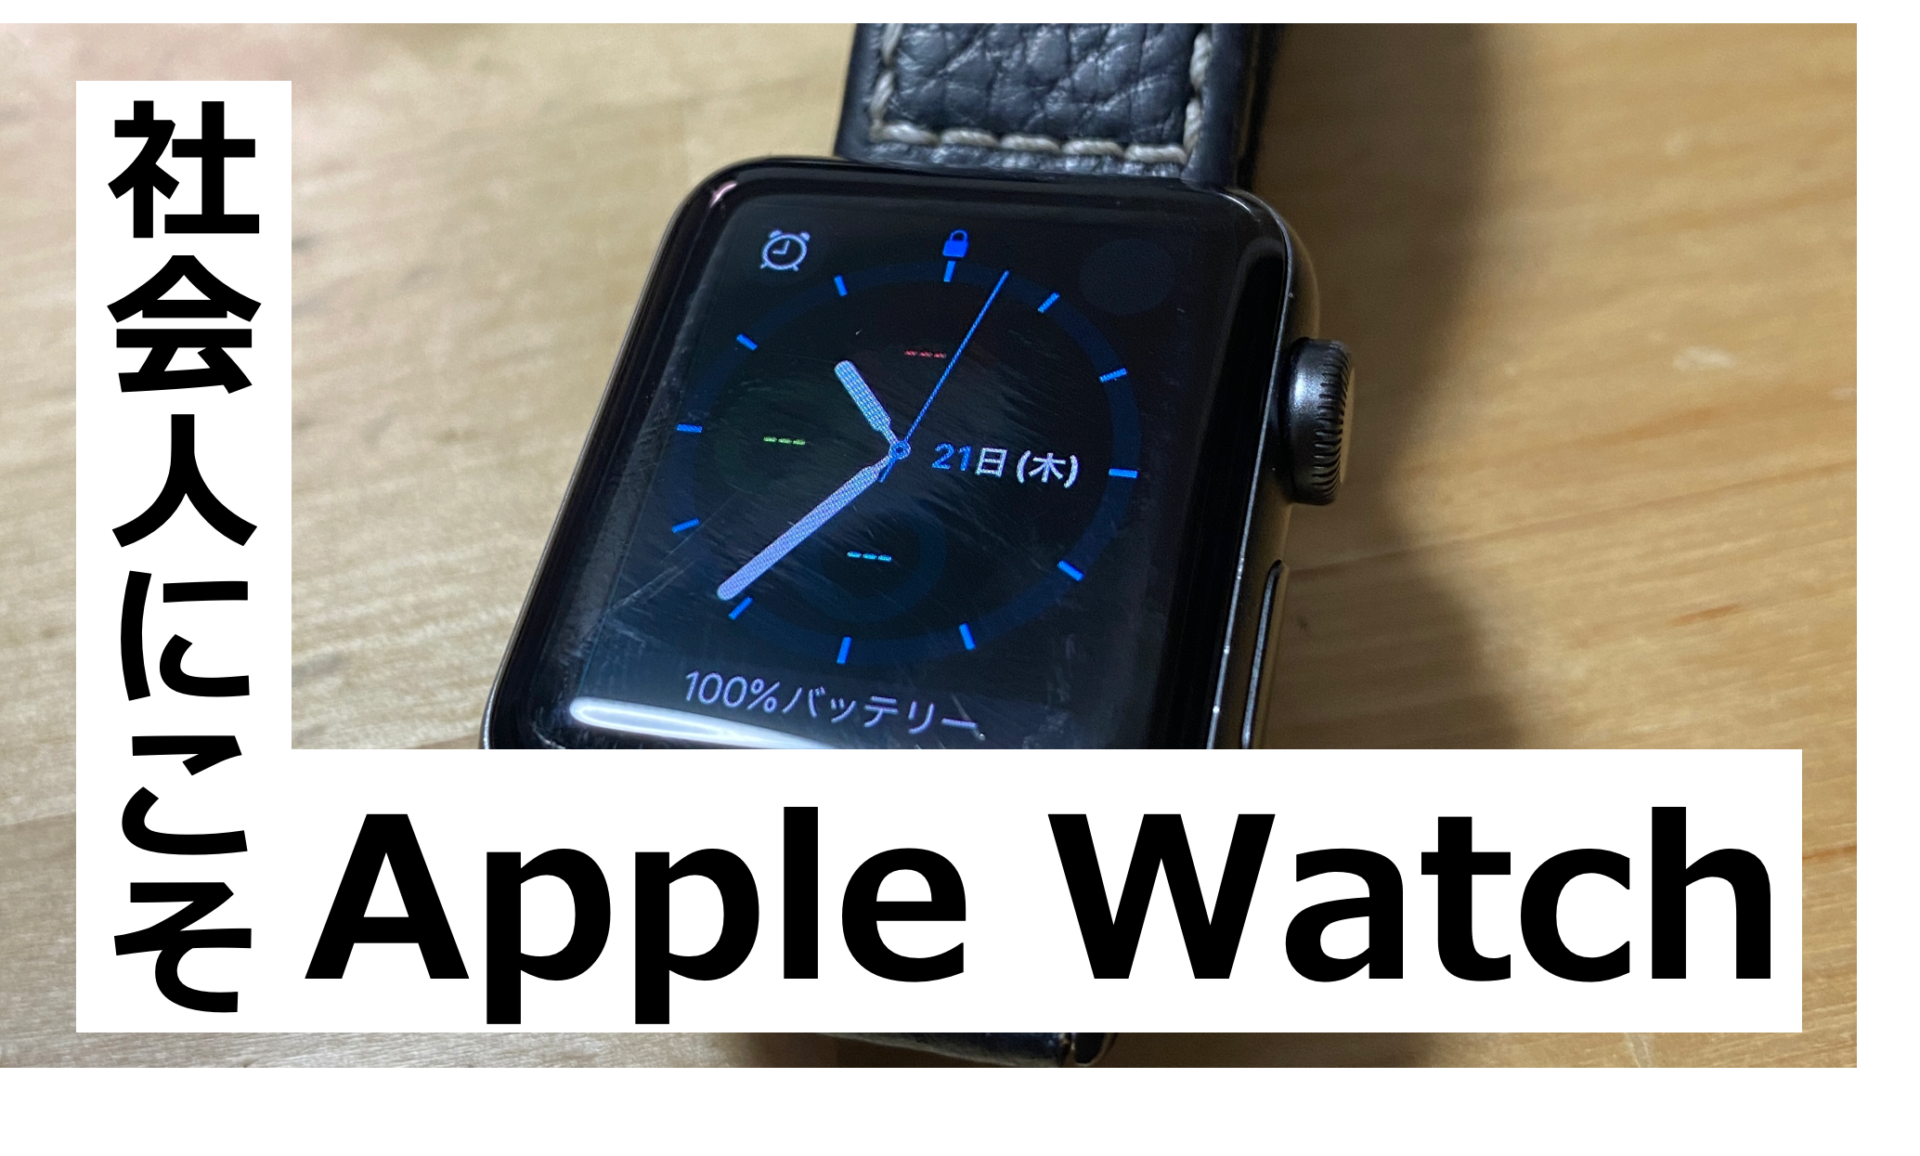 【新社会人必見】社会人にこそApple Watchを強く勧めます